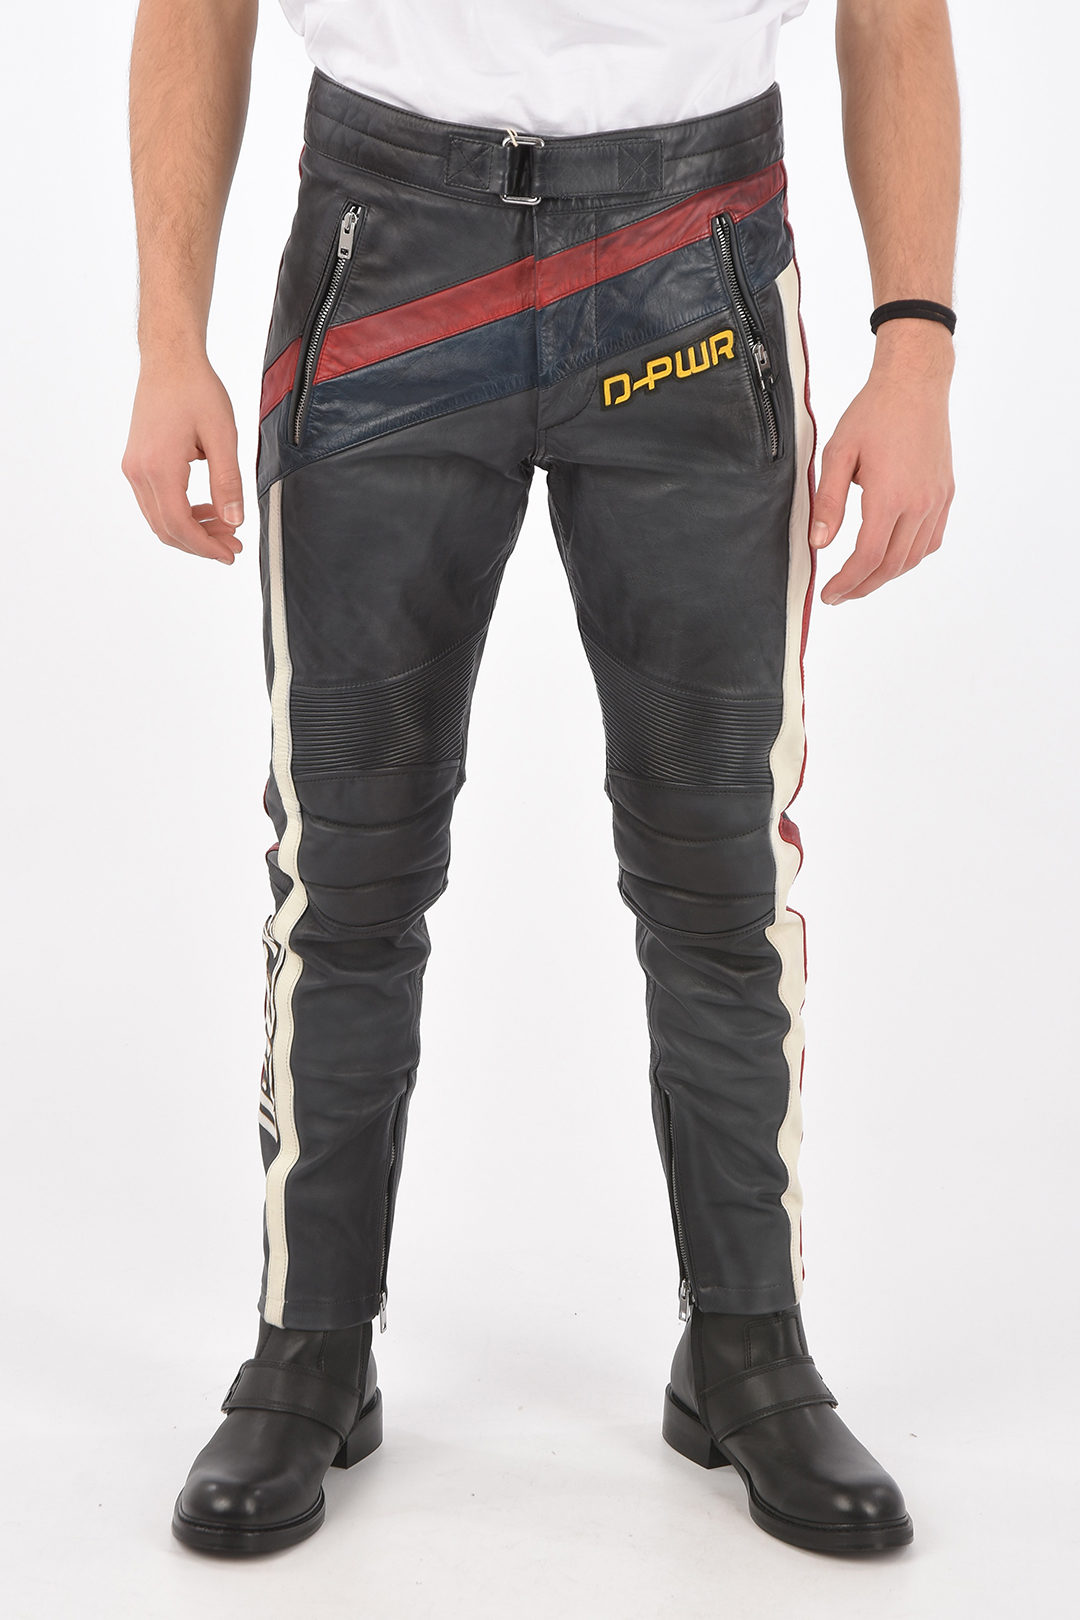 Rundt om Lækker aftale Diesel leather P-POWER biker pants with ankle zip men - Glamood Outlet